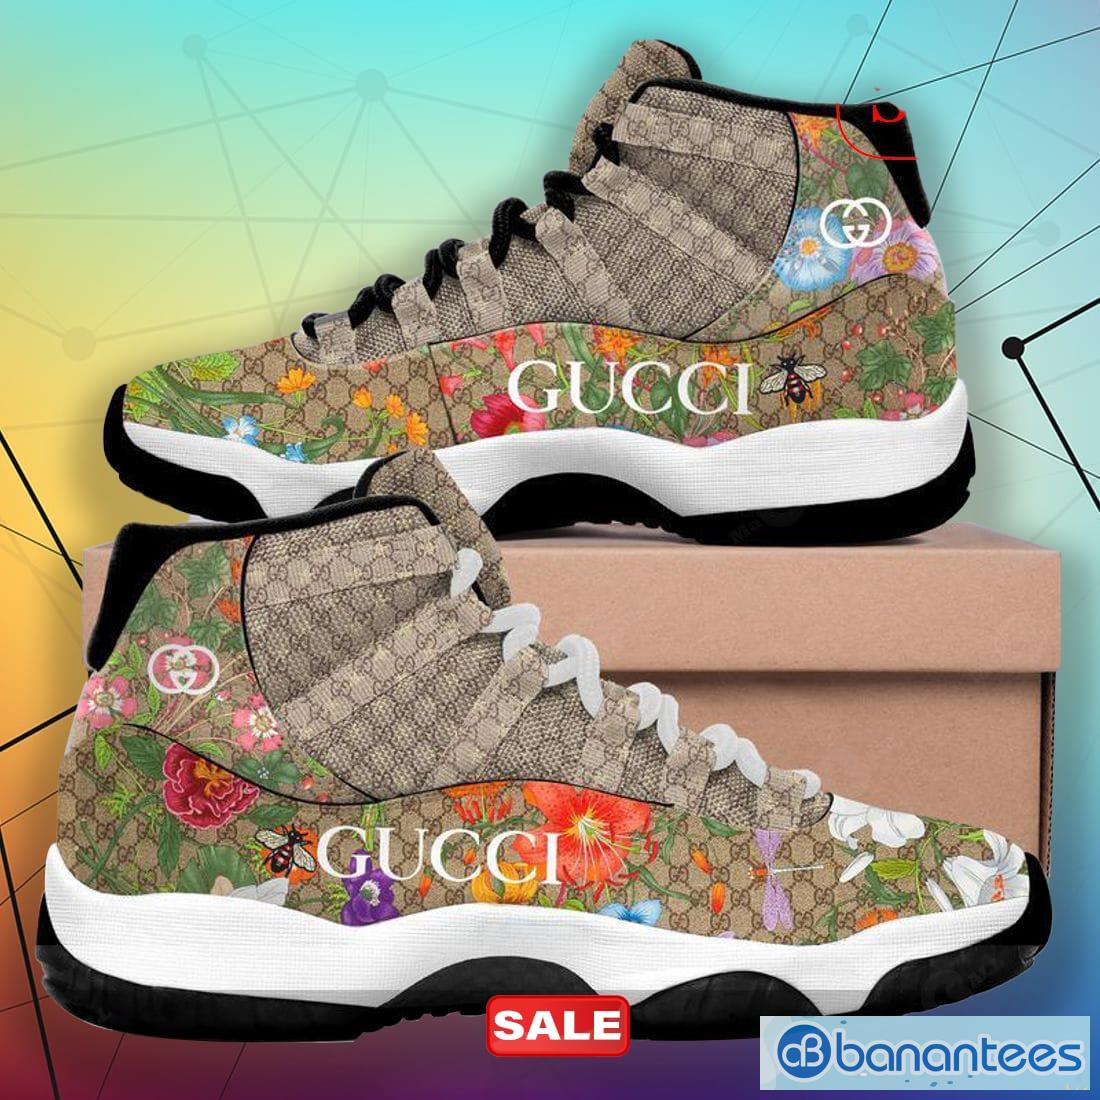 Brown Gucci Air Jordan 11 Sneakers Gifts For Men Women Shoes Design -  Banantees